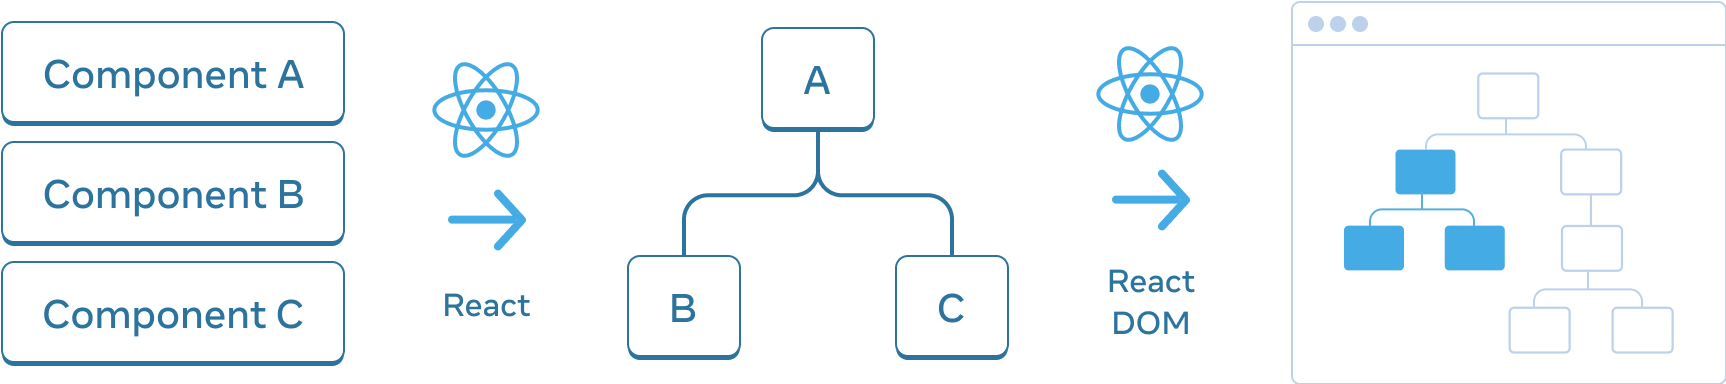 Схема с тремя горизонтально расположенными секциями. В первом разделе вертикально расположены три прямоугольника: 'Component A', 'Component B', и 'Component C'. Переход к следующей панели — это стрелка с логотипом React сверху и надписью 'React'. Средний раздел содержит дерево компонентов с корнем, обозначенным 'A', и двумя дочерними элементами, обозначенными 'B' и 'C'. Переход к следующему разделу снова осуществляется с помощью стрелки с логотипом React сверху и надписью 'React'. Последний, третий раздел, представляет собой каркас браузера, содержащий дерево из 8 узлов, в котором выделено только подмножество (с указанием поддерева из среднего раздела).